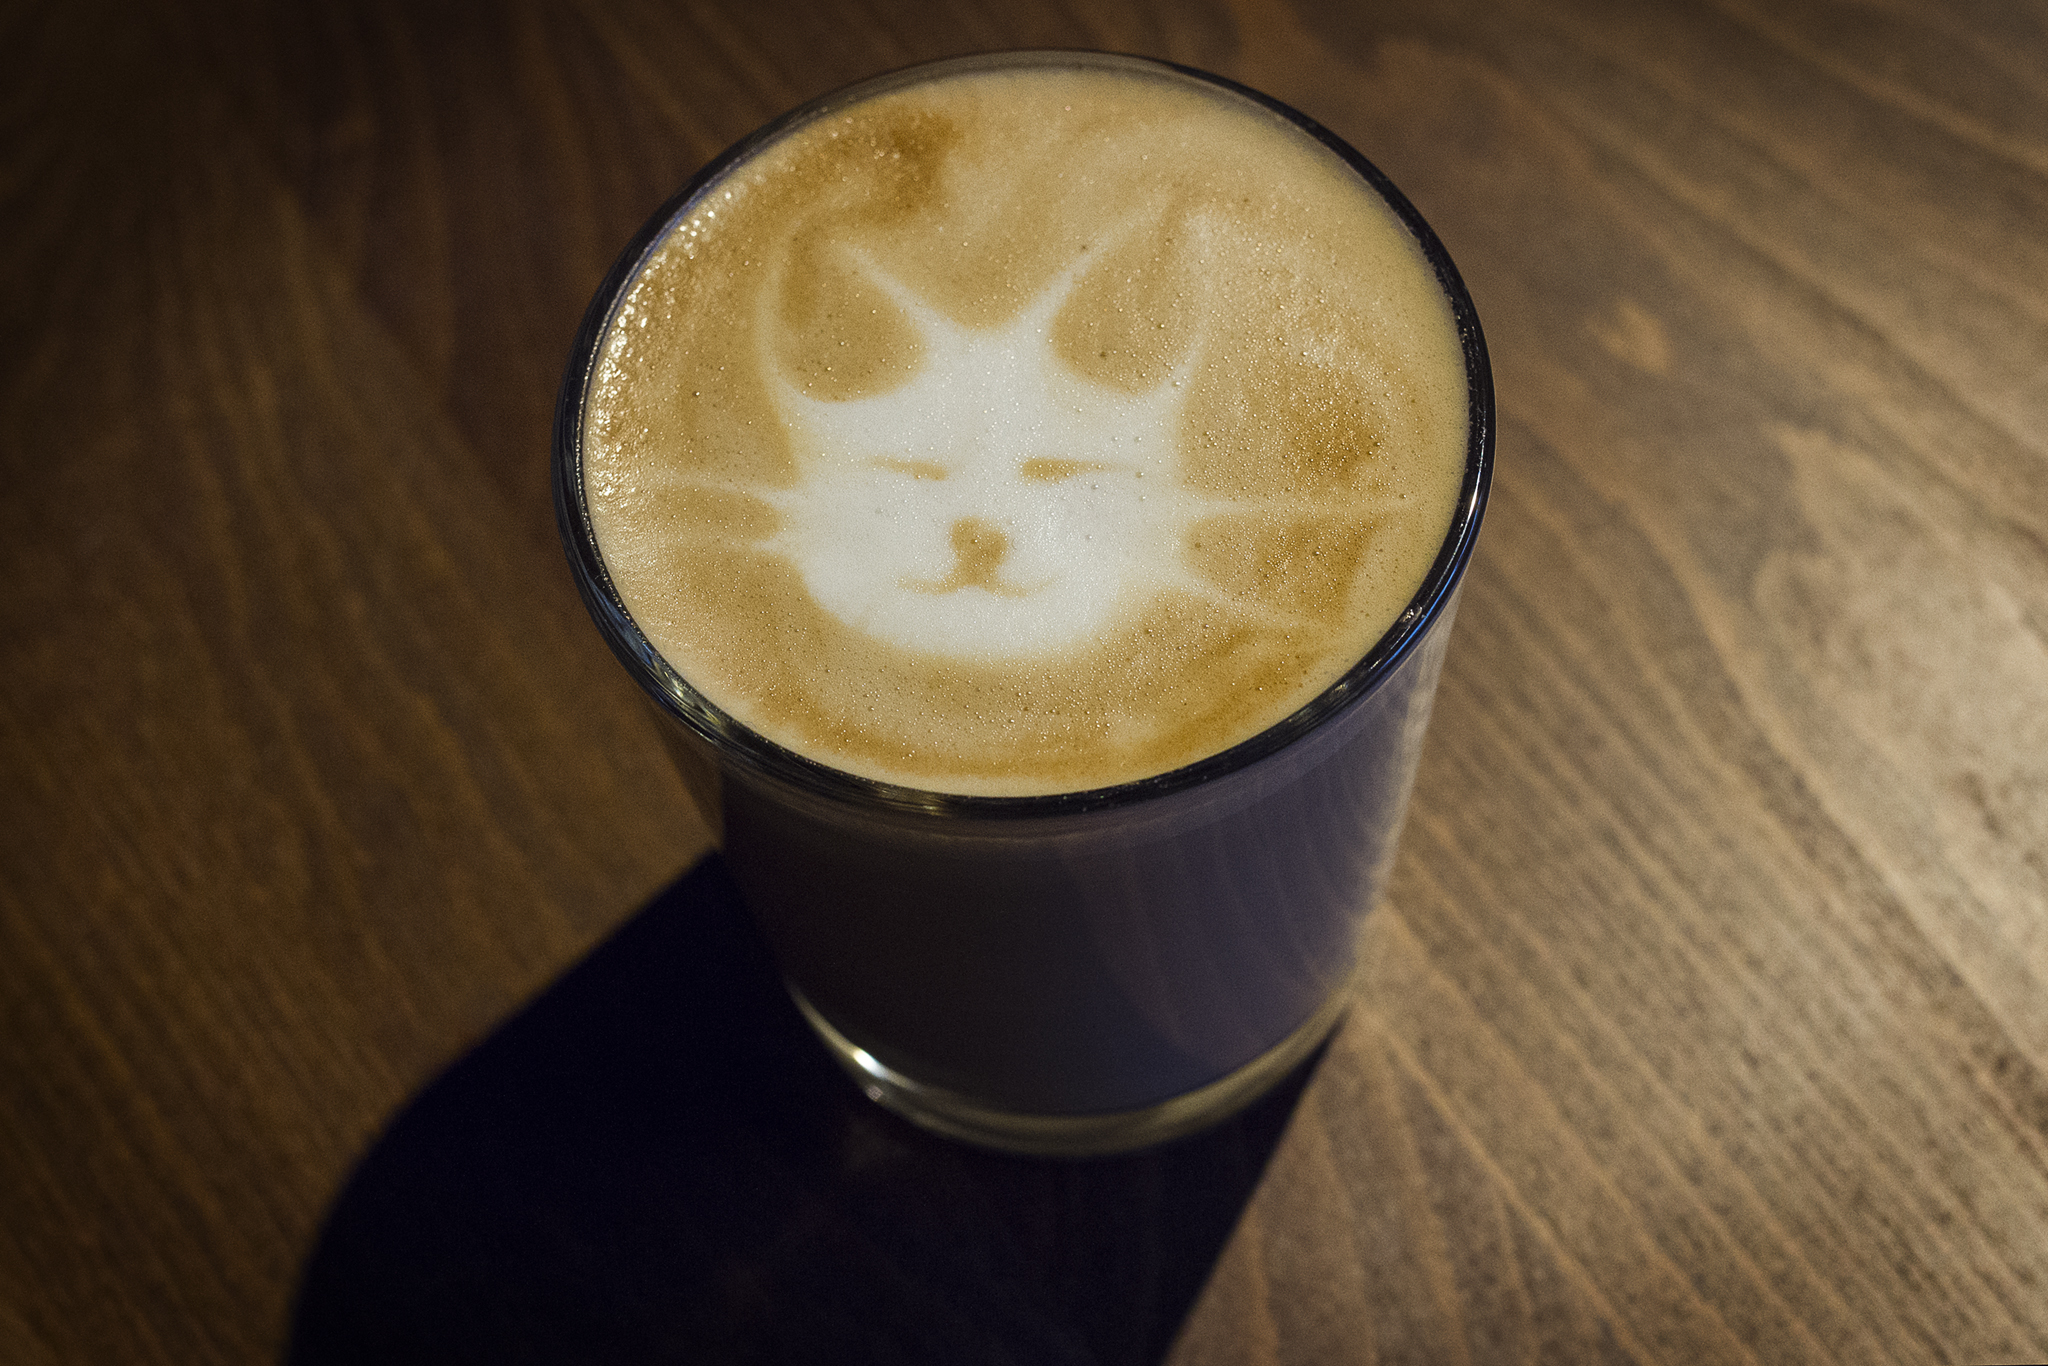 java whiskers latte cat café stockholm sweden